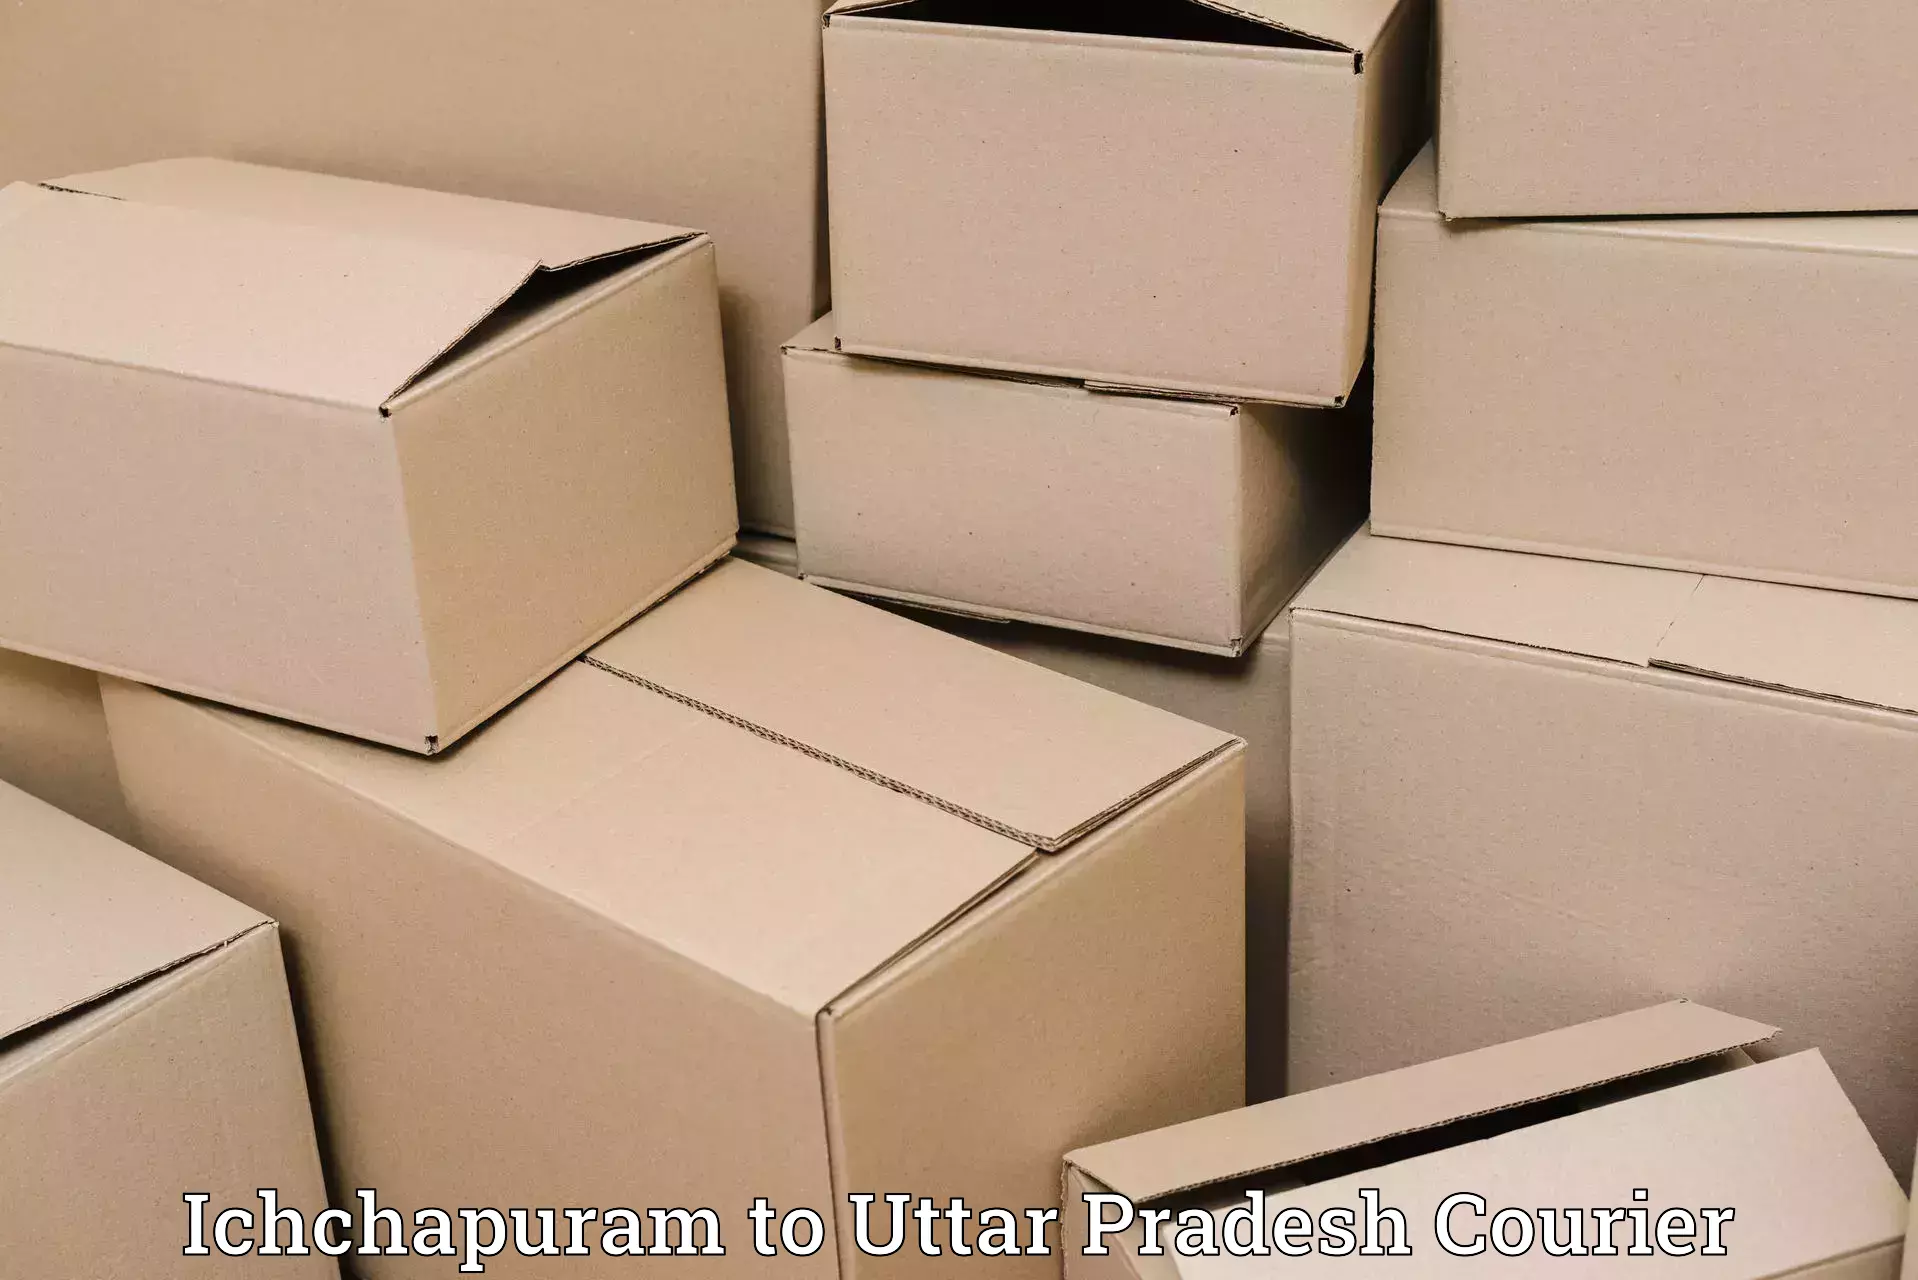 Modern delivery methods Ichchapuram to Gauri Bazar